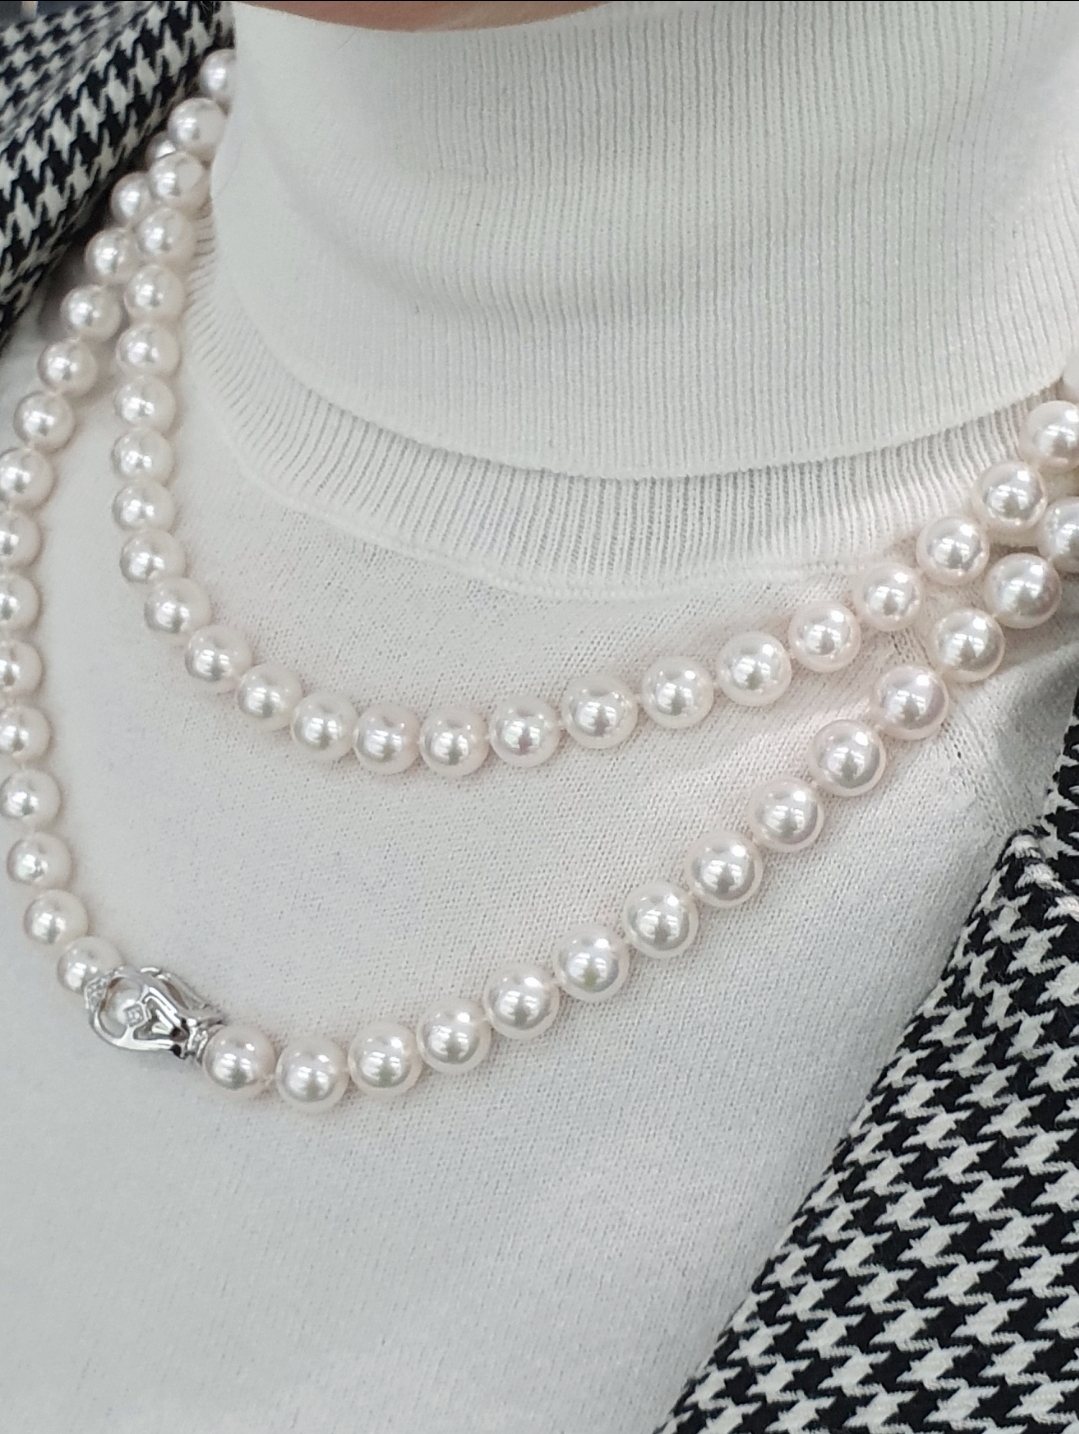 Come indossare le perle